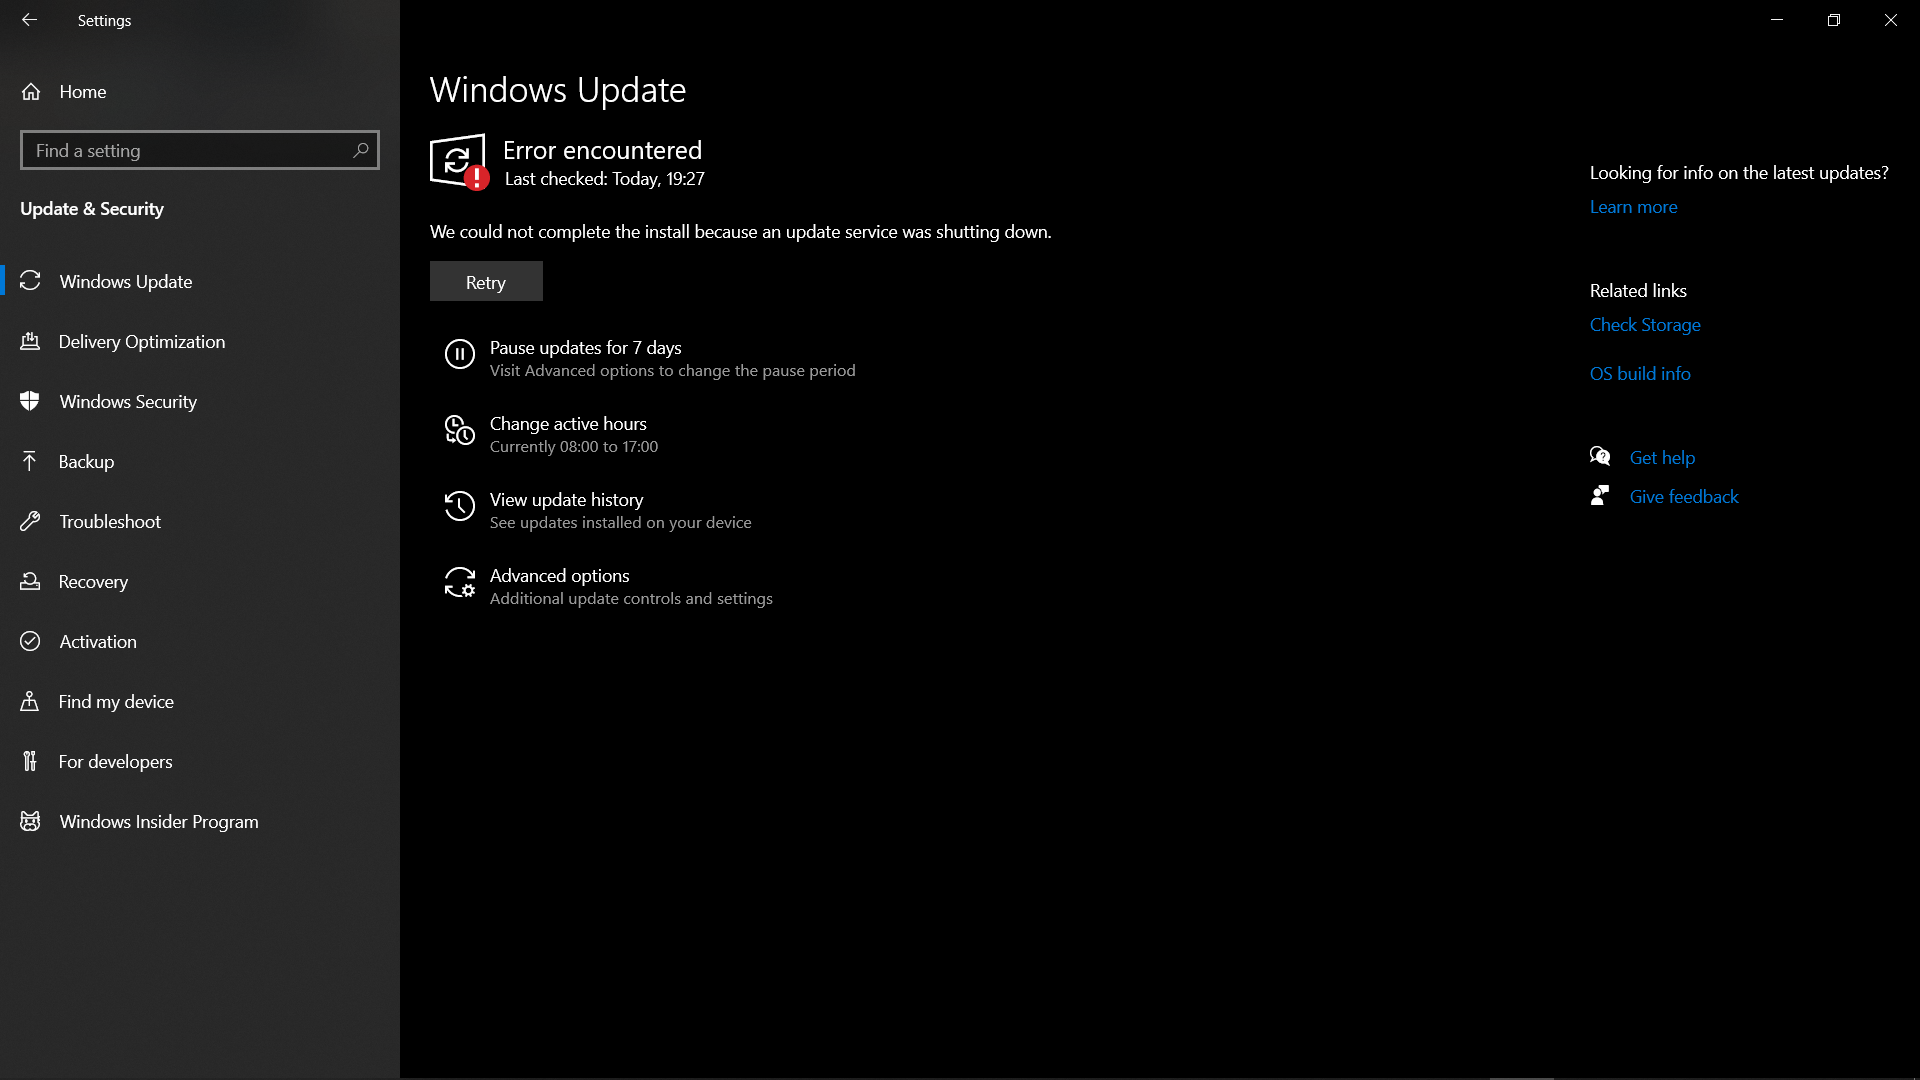 Windows update service shutting down. 87a11c97-7640-433f-b57d-64168fc57ecb?upload=true.png